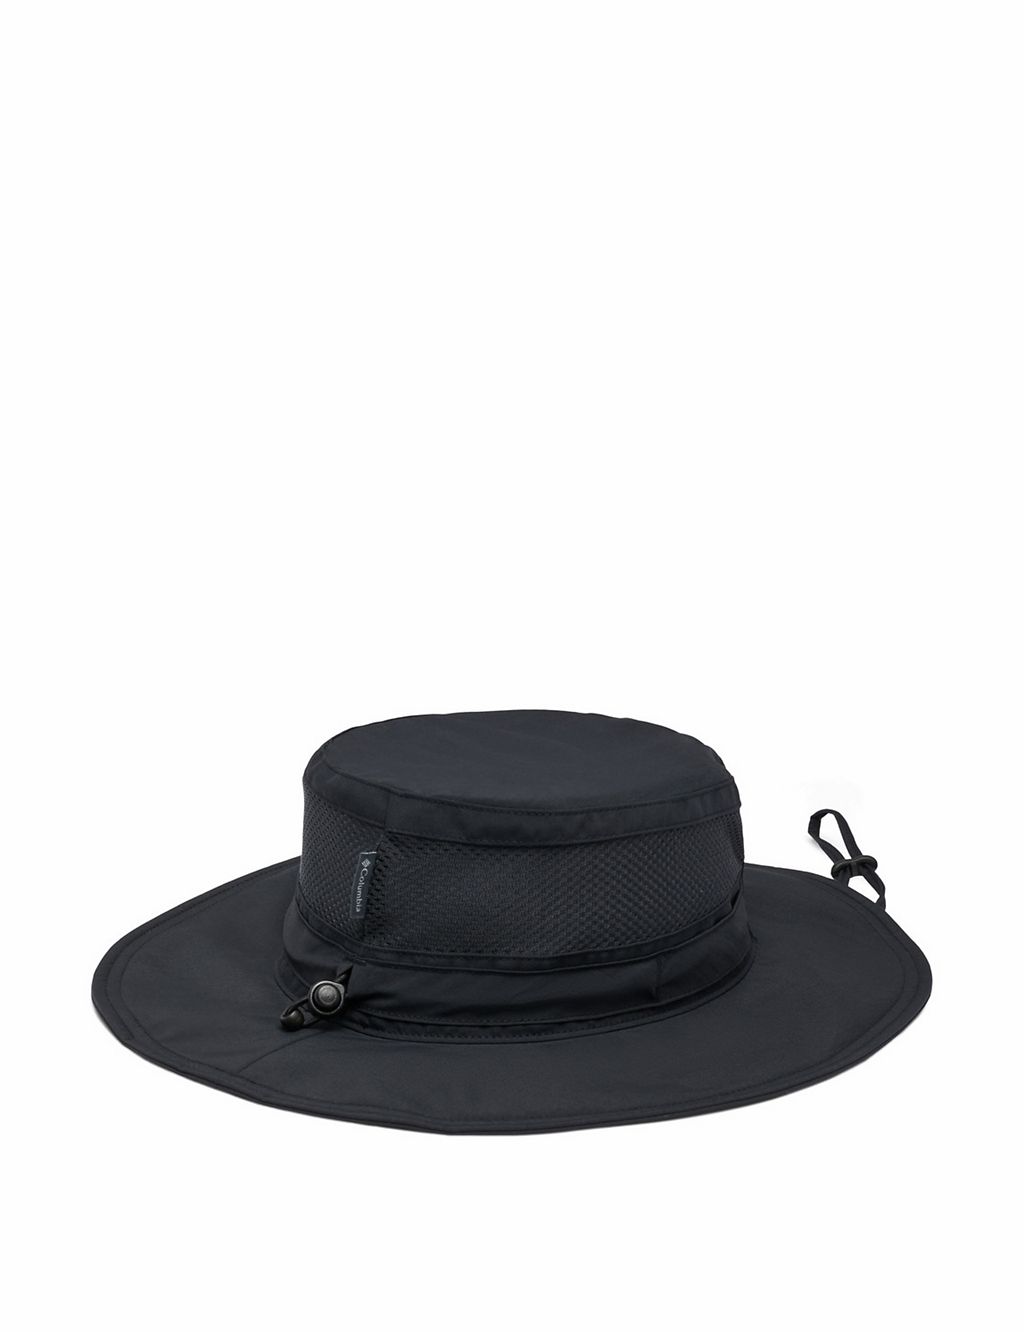 Panama Hat 2 of 2